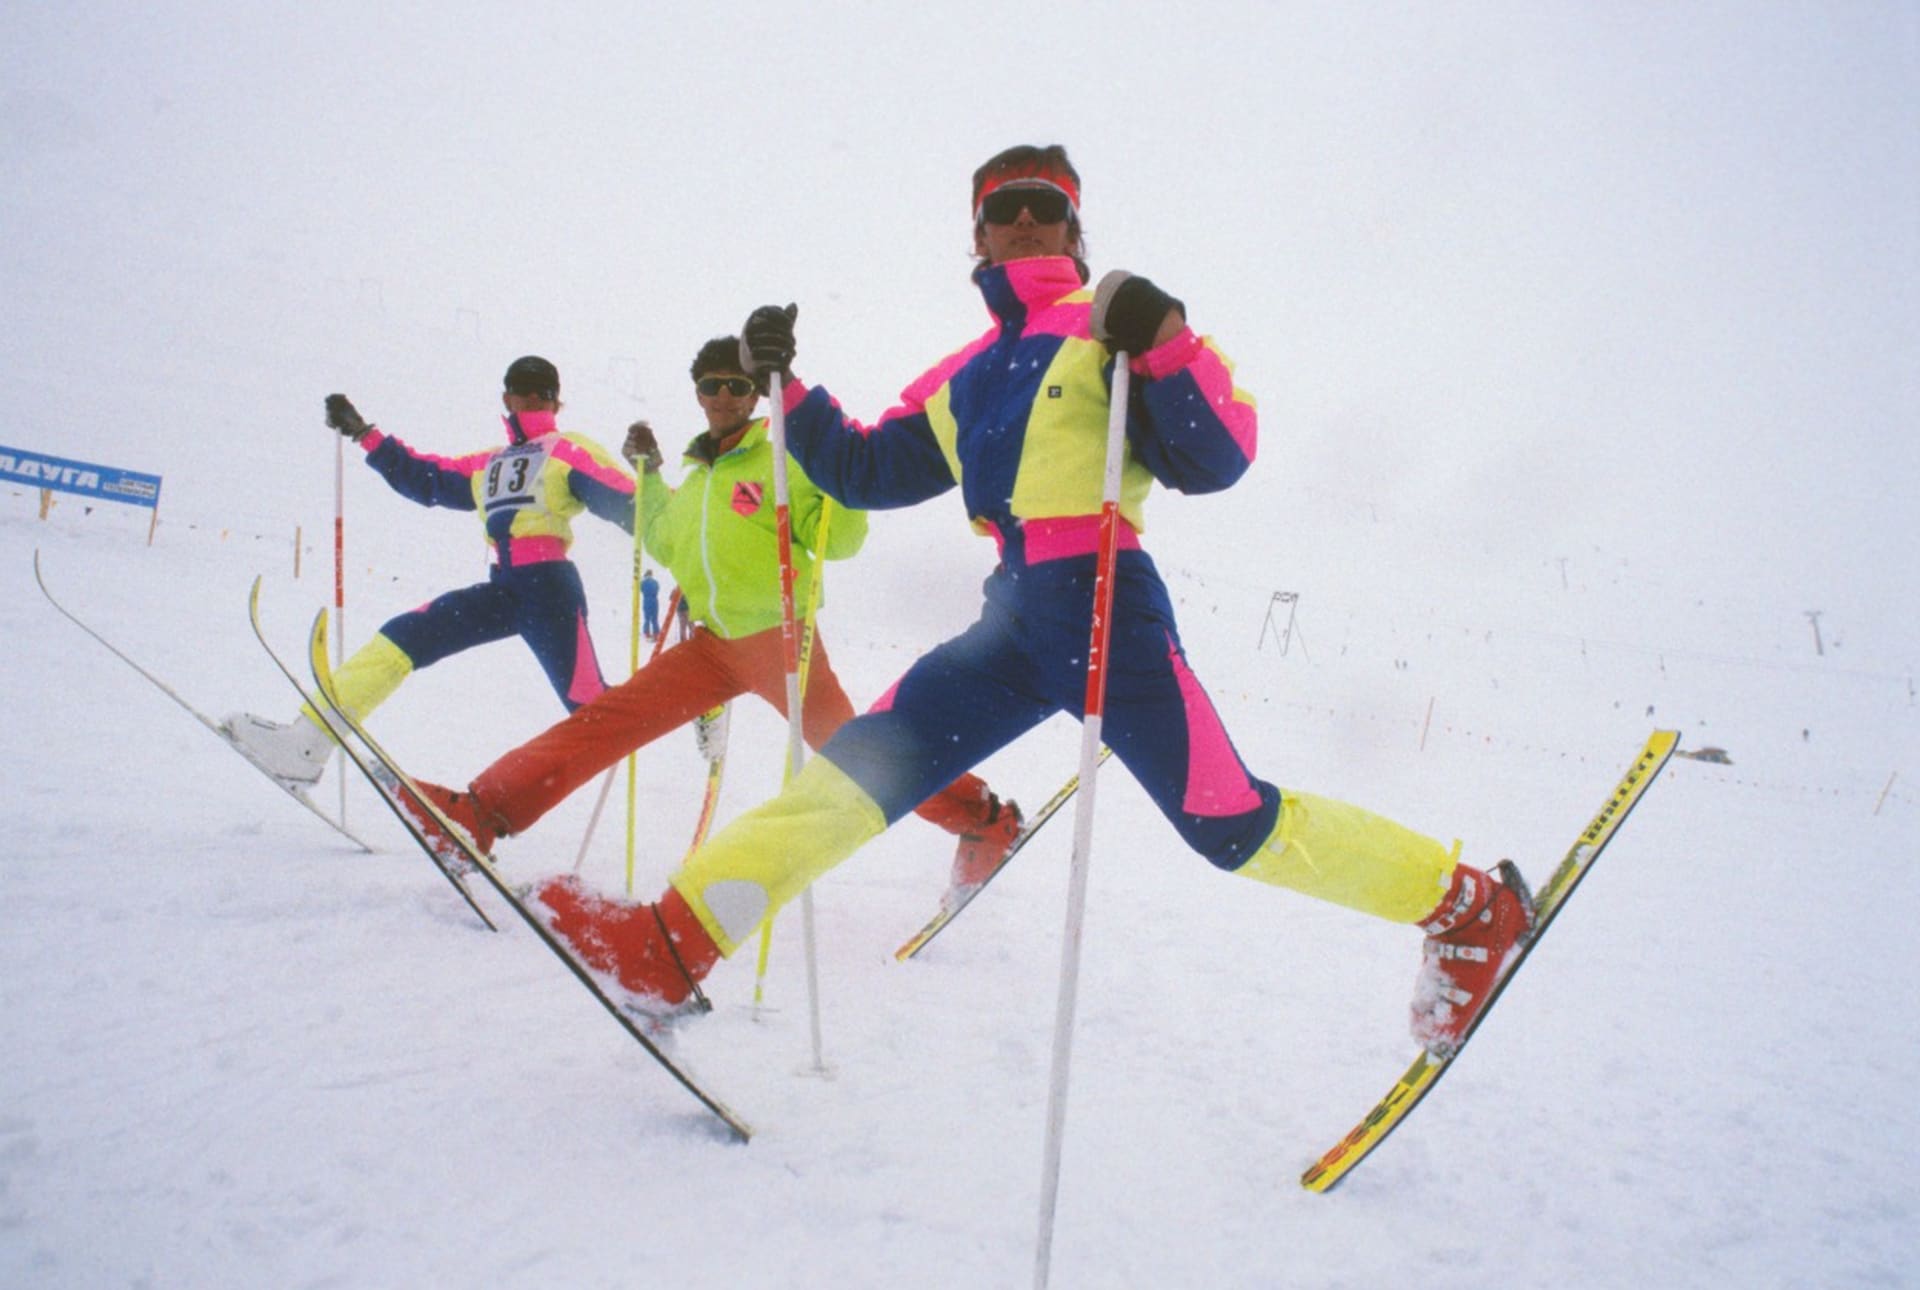 Balet na lyžích byl populární zejména v 80. letech minulého století.